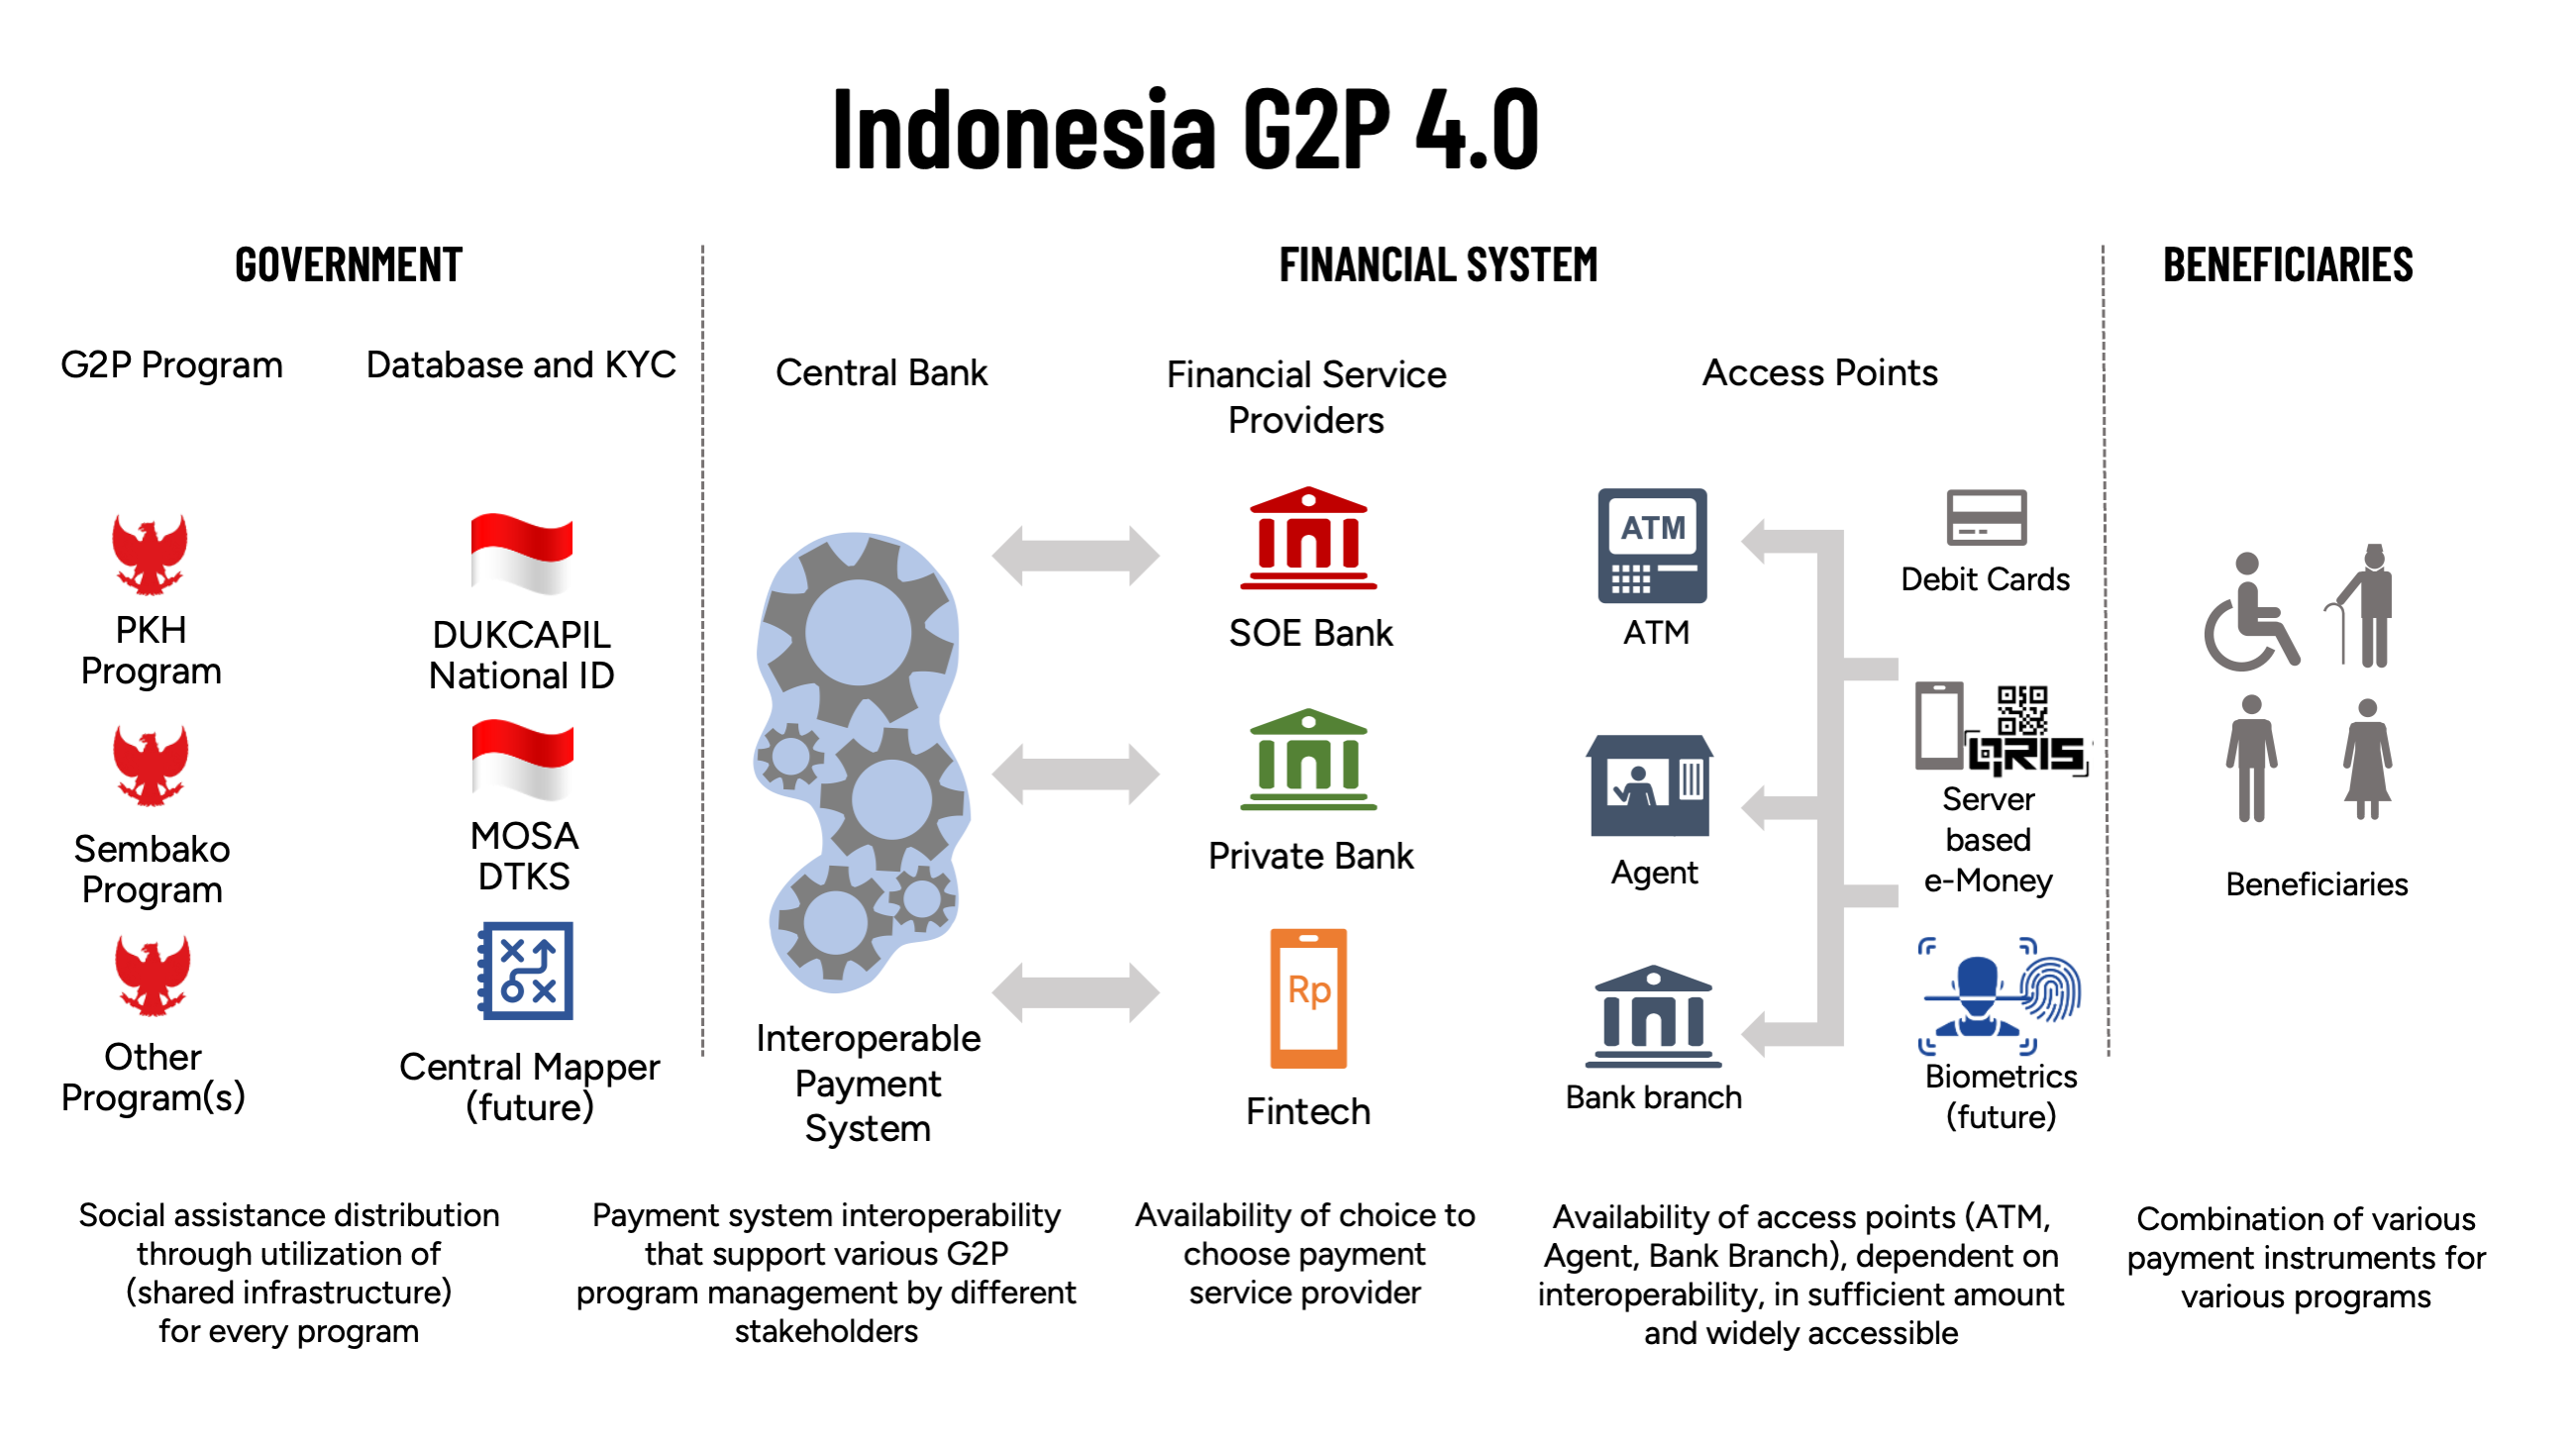 Figure 1: Indonesia G2P 4.0